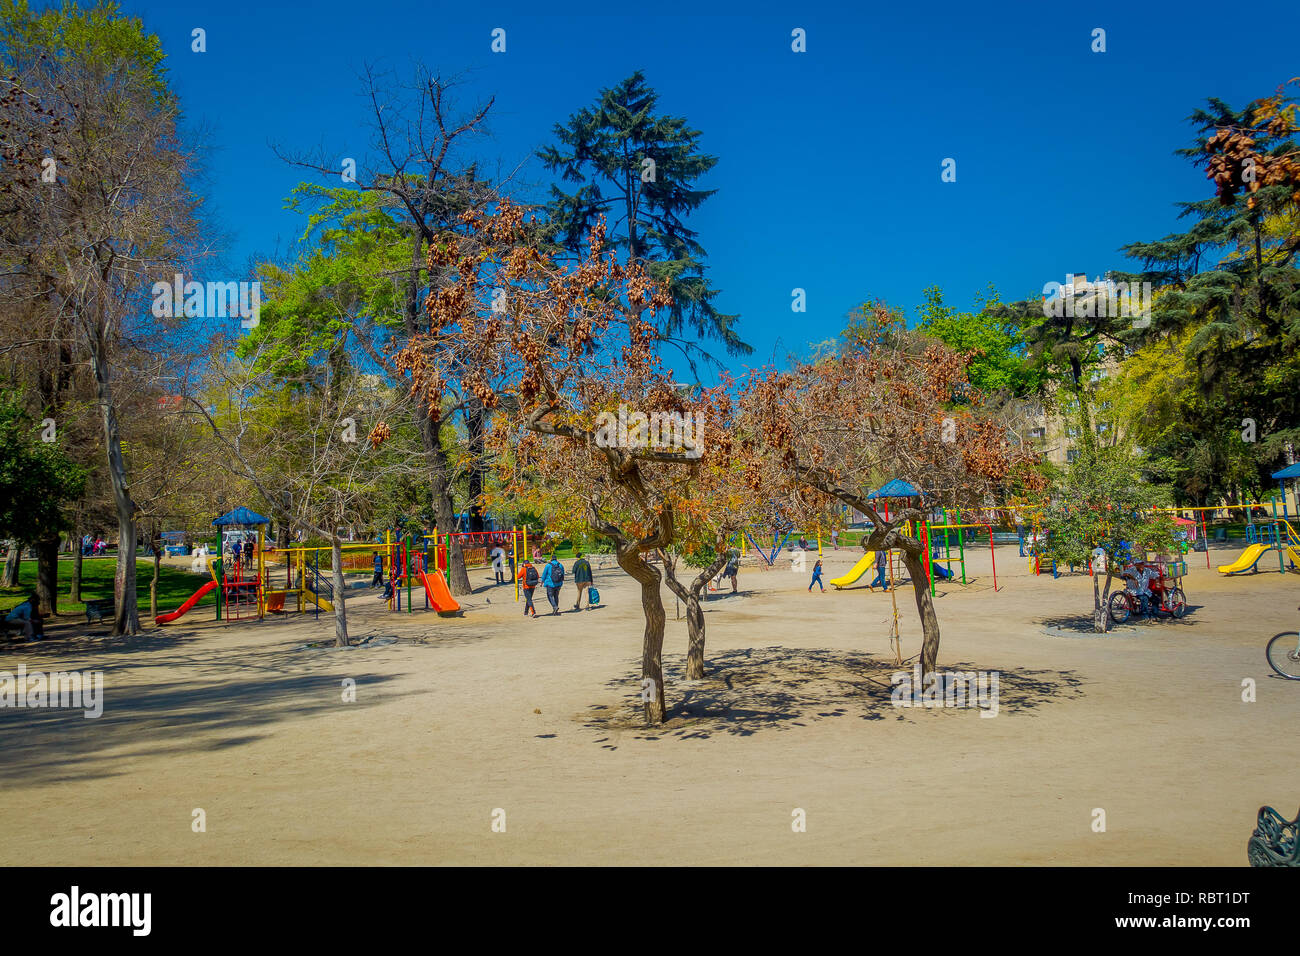 SANTIAGO, CHILE - 17. SEPTEMBER 2018: Unbekannter unscharfes Bild von Menschen zu Fuß in den sandigen Spielplatz am Forestal Parks in Santiago, der Hauptstadt Chiles Stockfoto